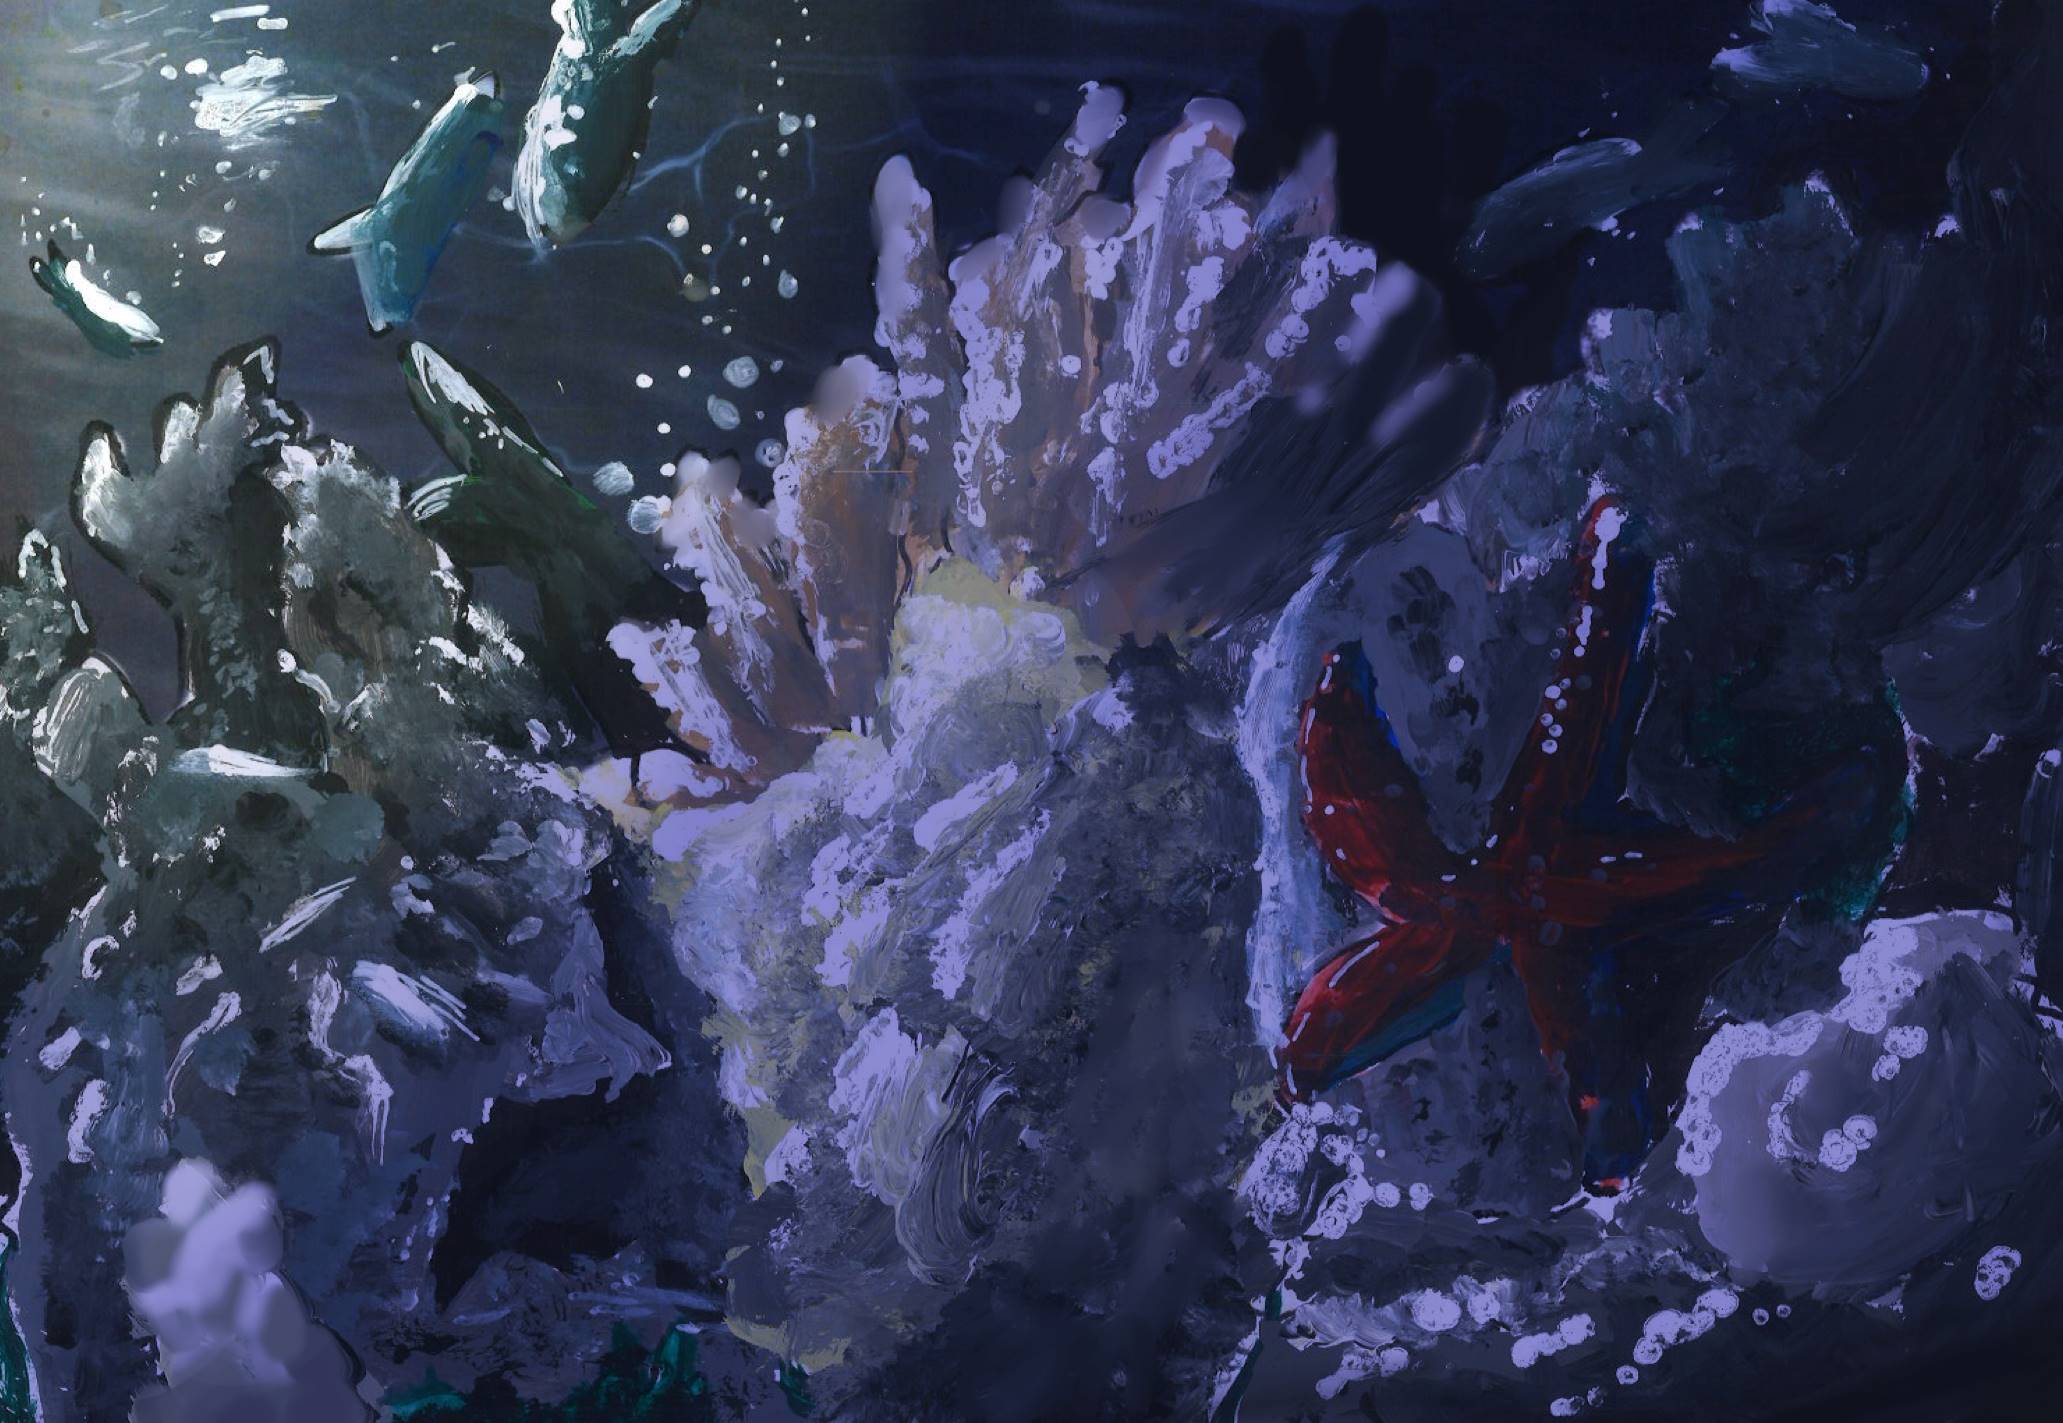 A dark scene of corals, sea star and fish underwater.